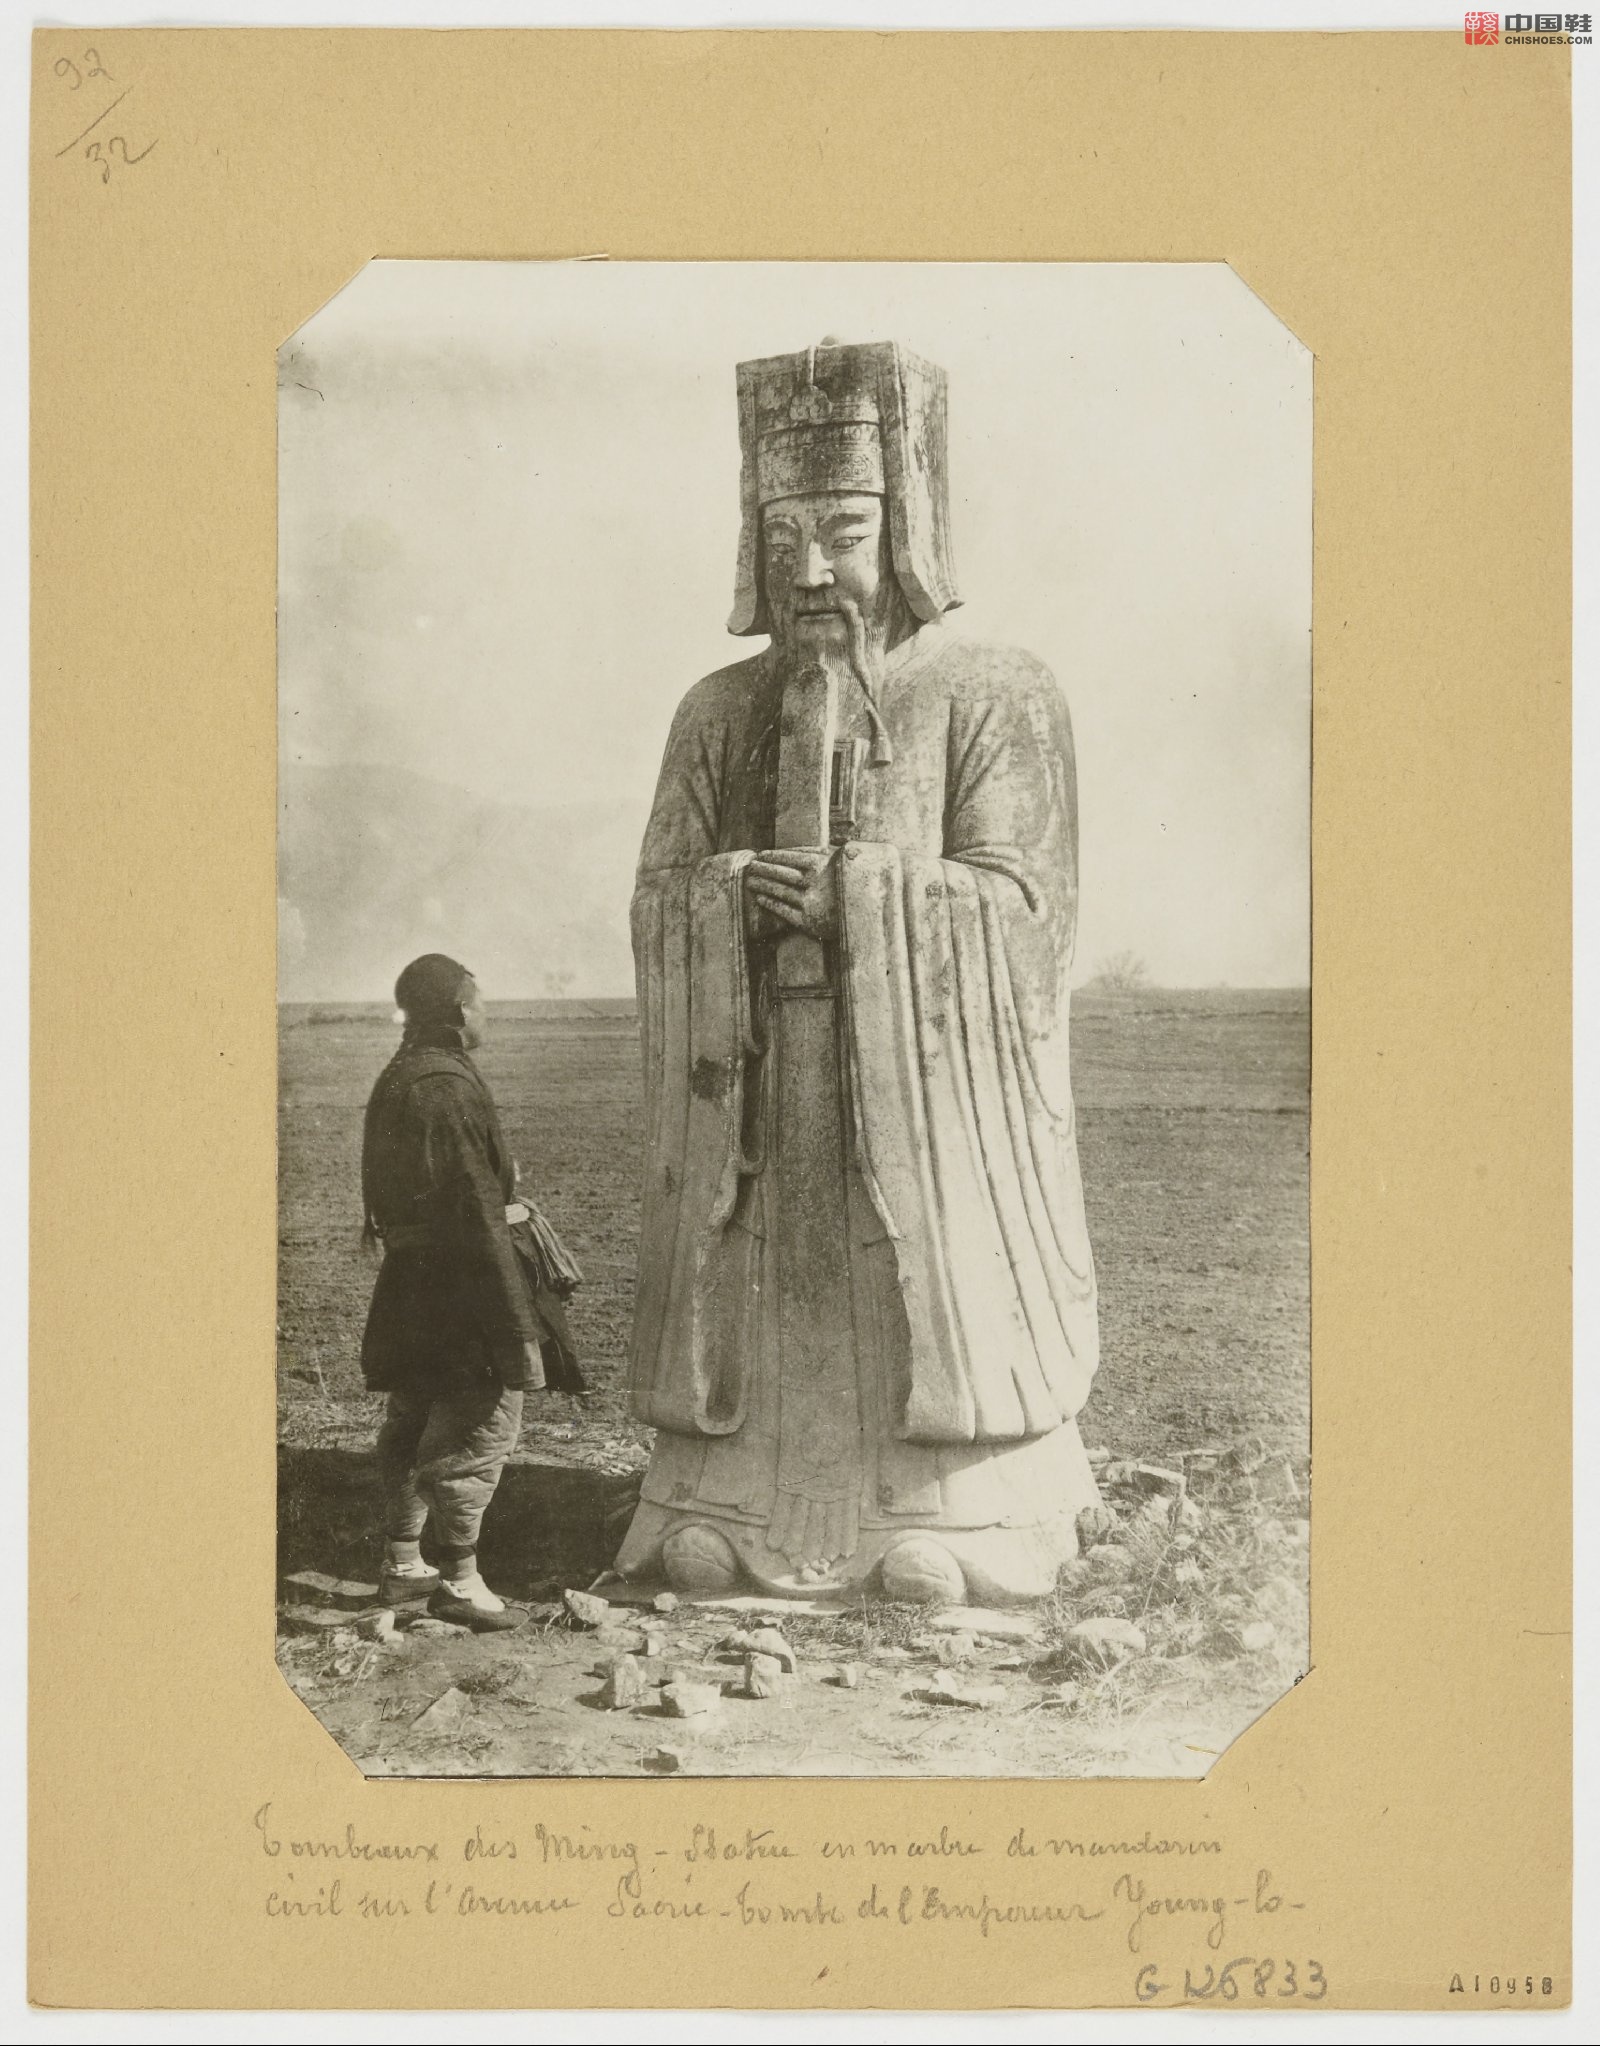 拉里贝的中国影像记录.415幅.By Firmin Laribe.1900-1910年_Page_306.jpg